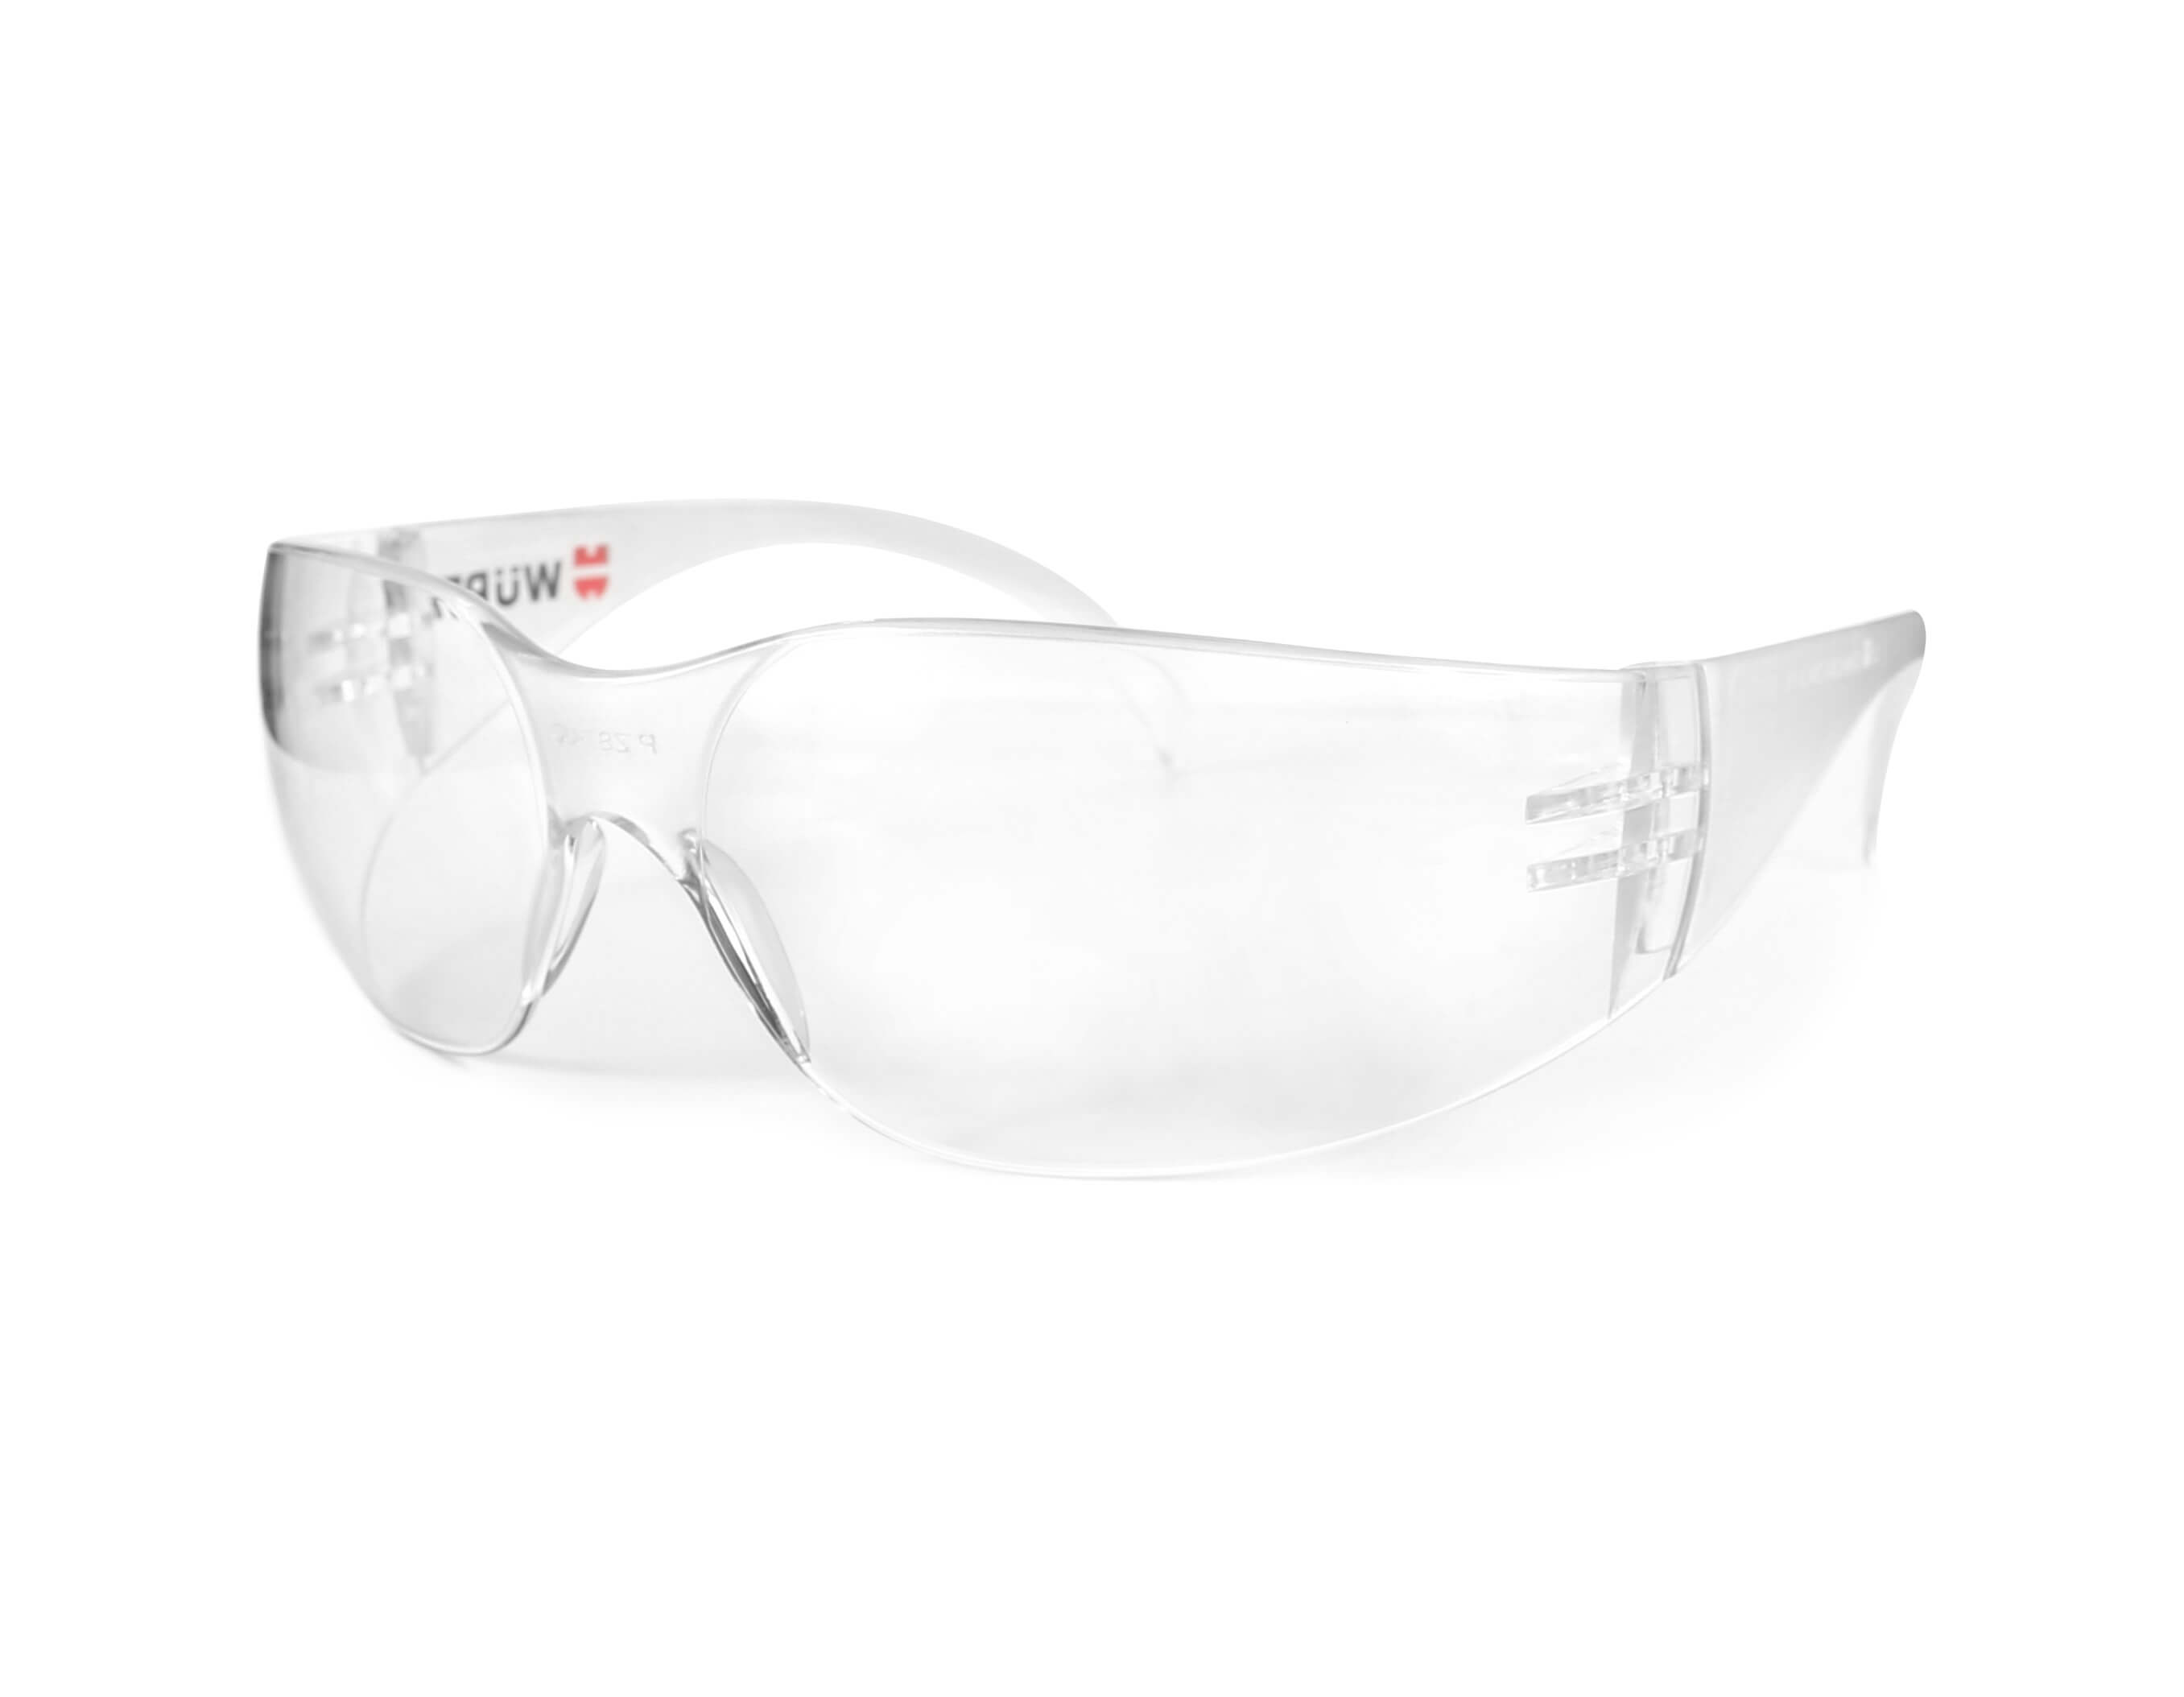 TRENDUS SAFETY GLASSES - CLR TMPL/CLR LENS